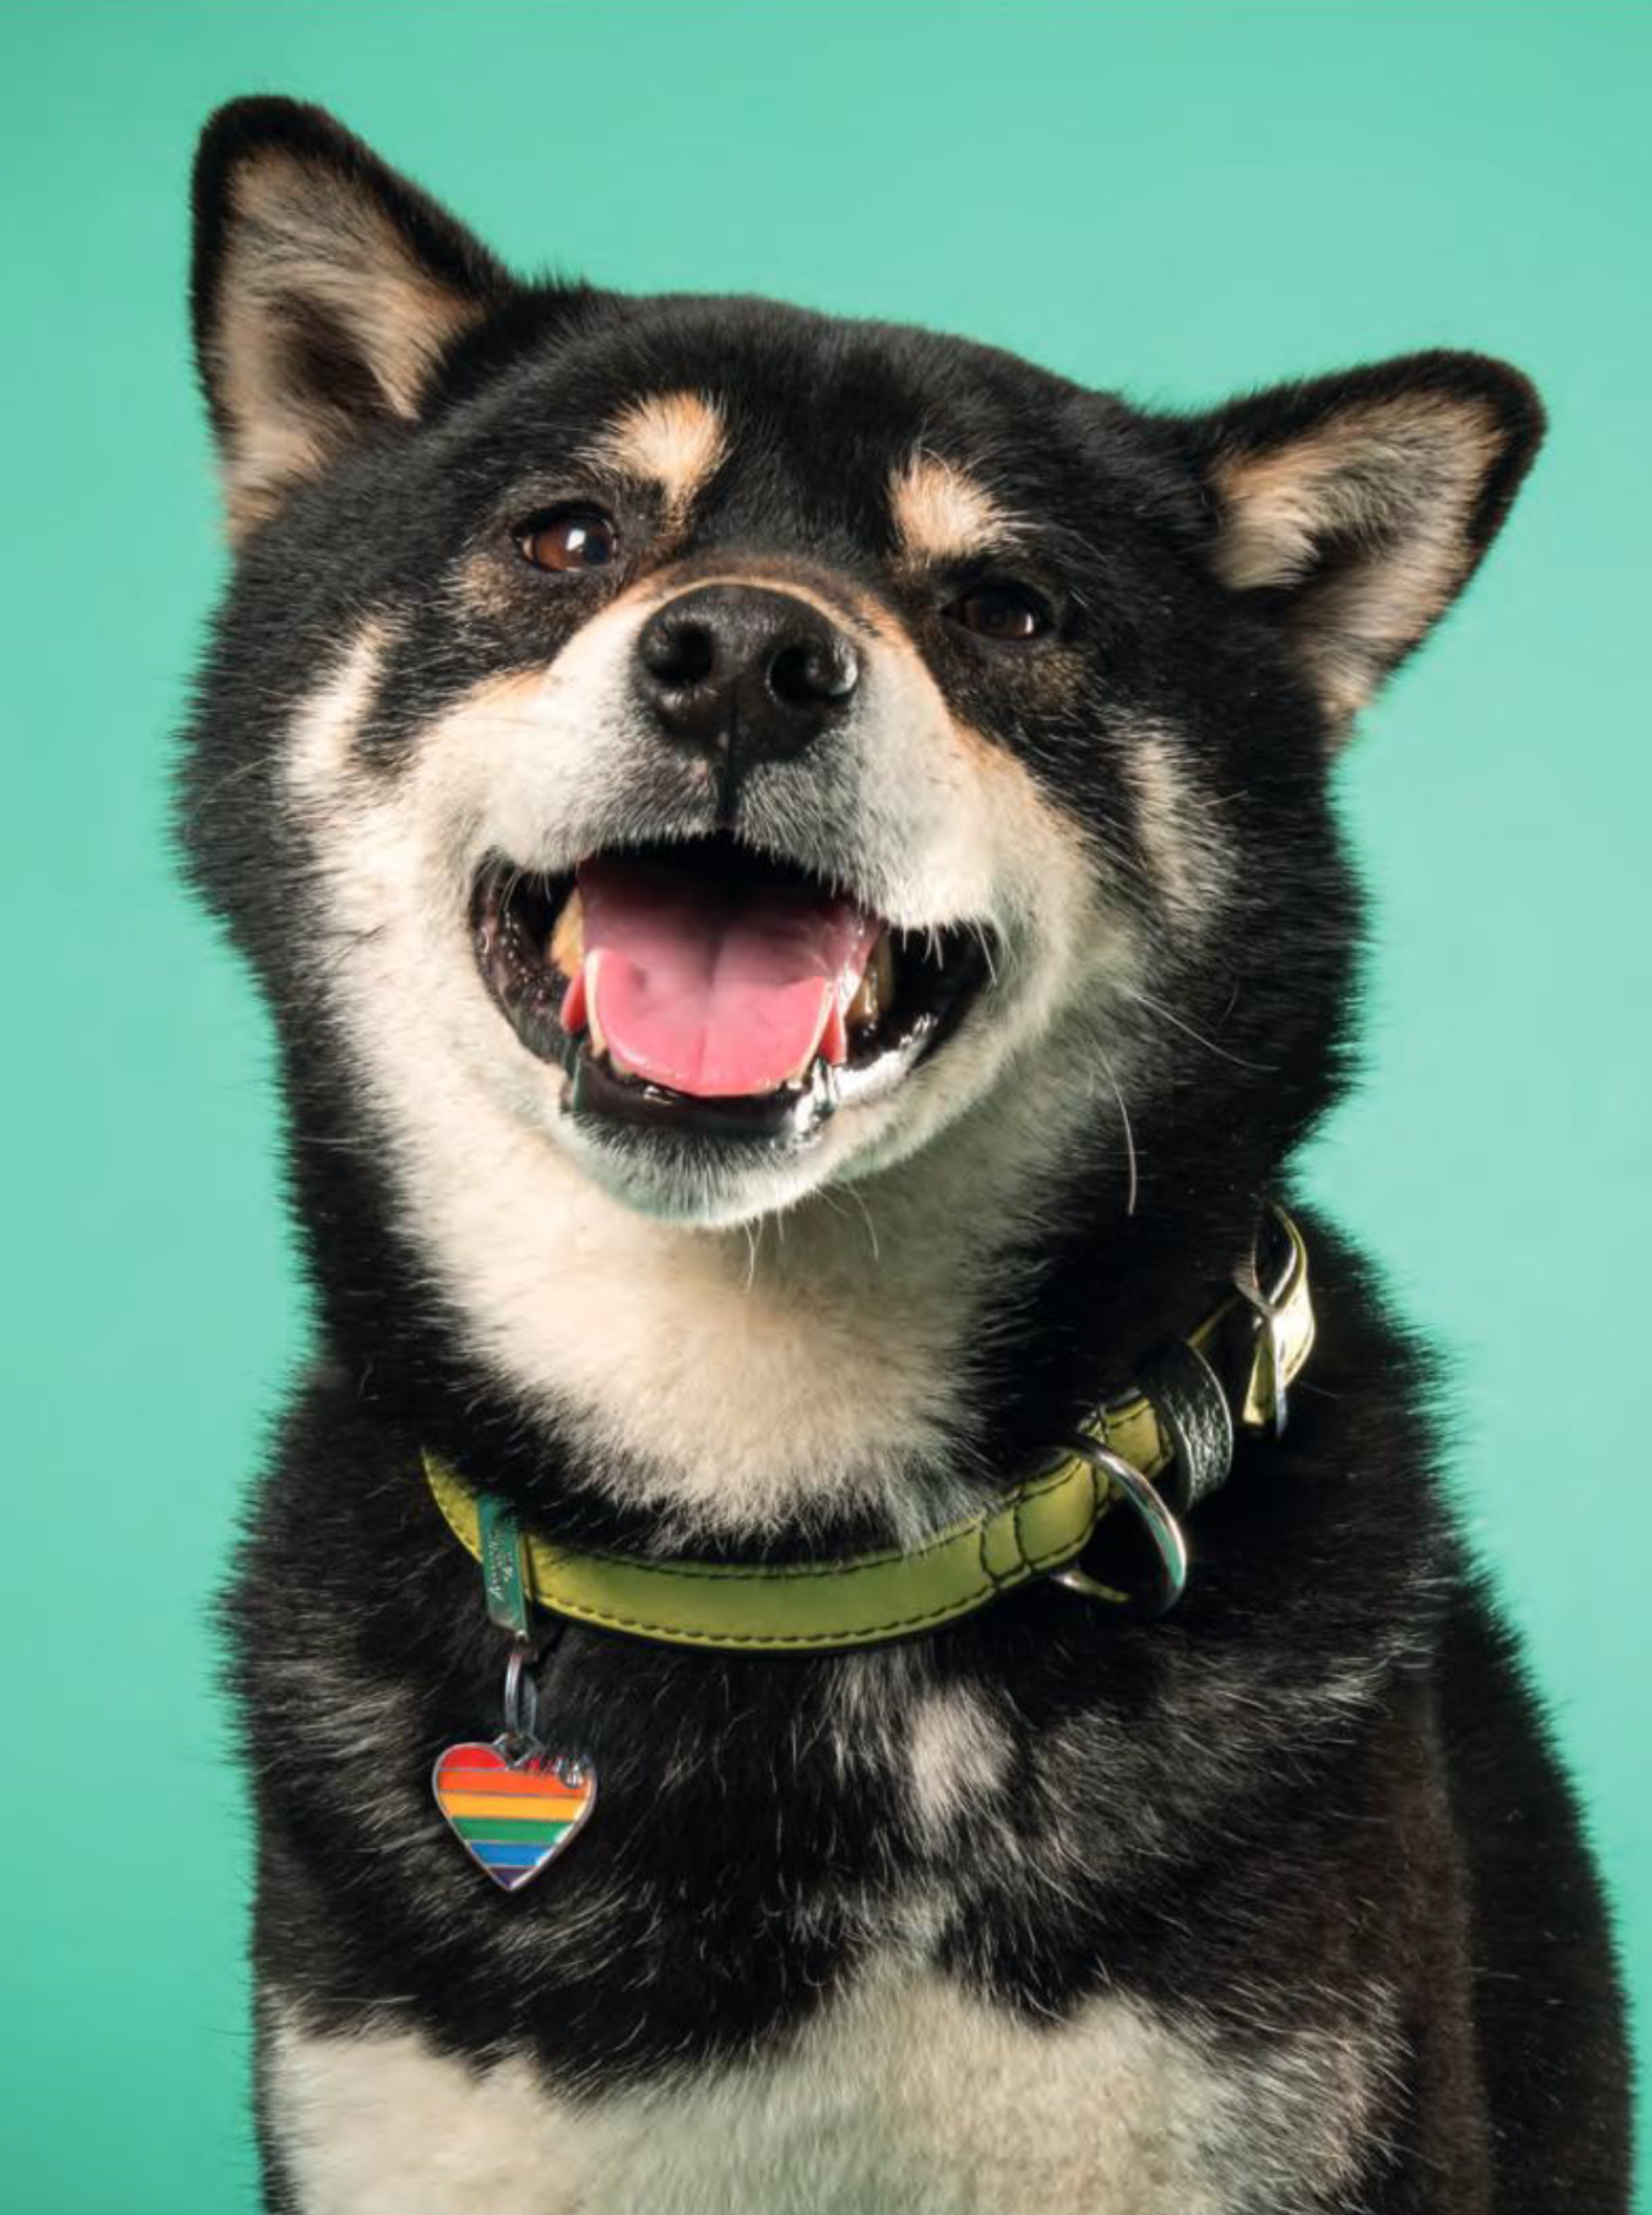 Placa ID Arco Iris Chica en Forma de Corazon para Perros